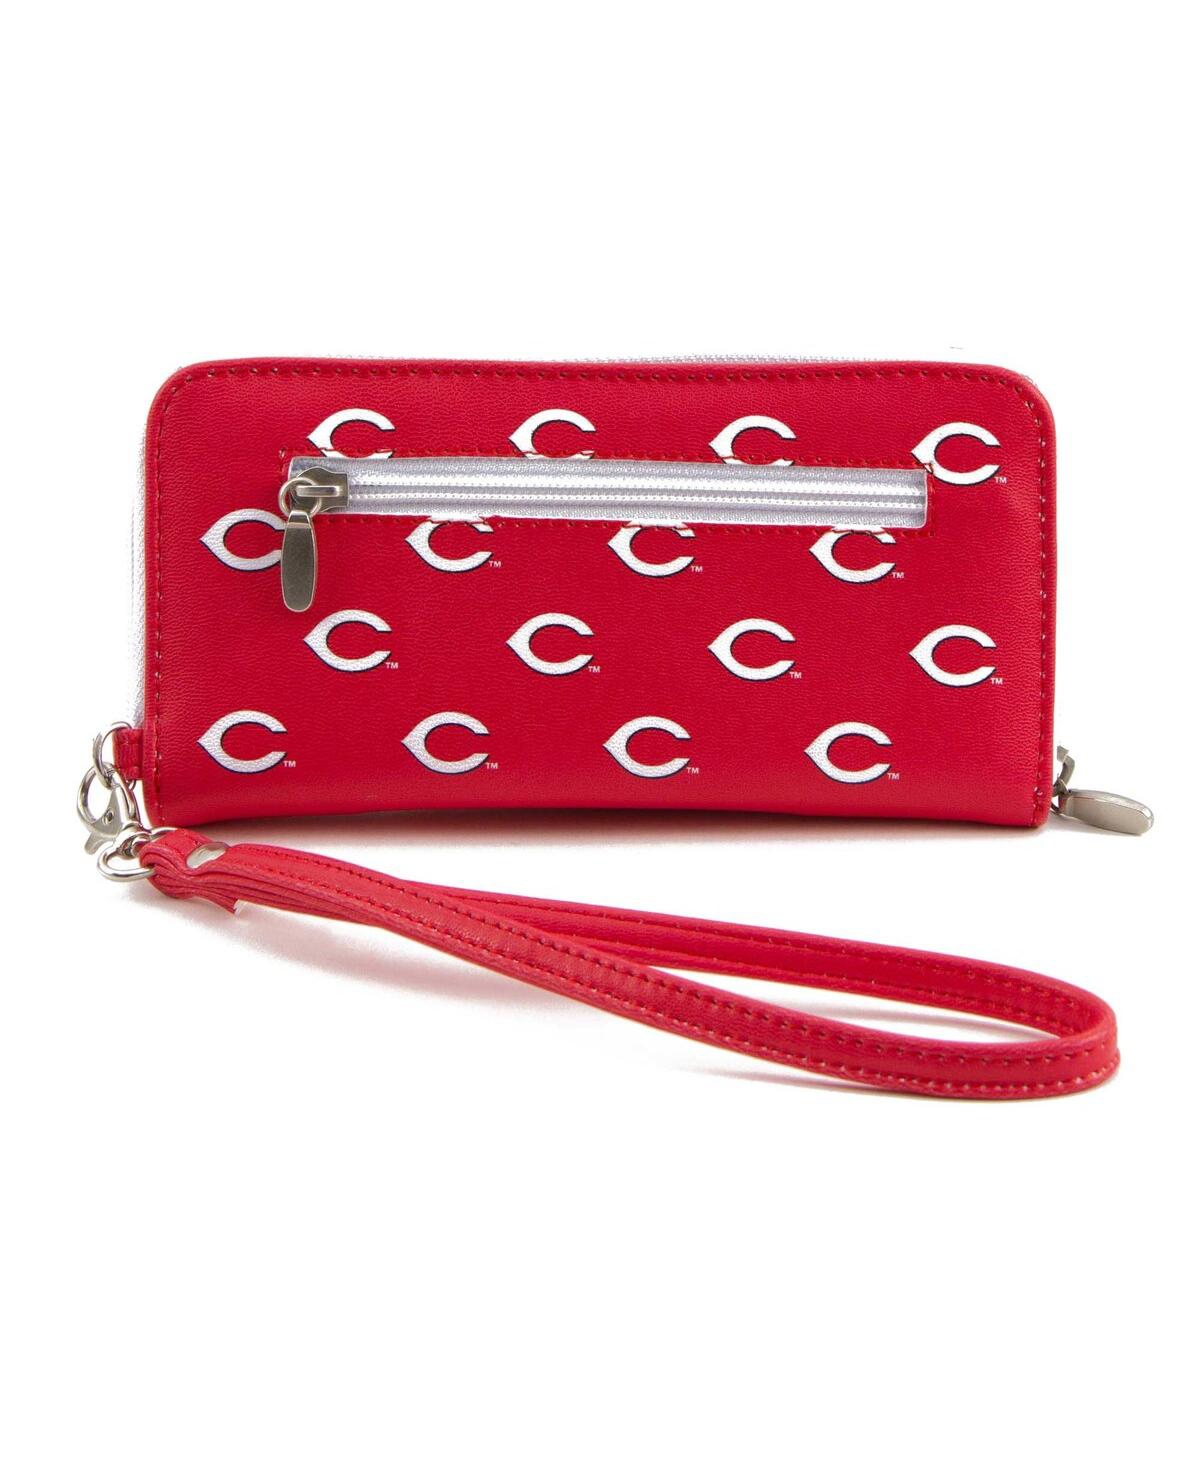 Women's Cincinnati Reds Zip-Around Wristlet Wallet - Red